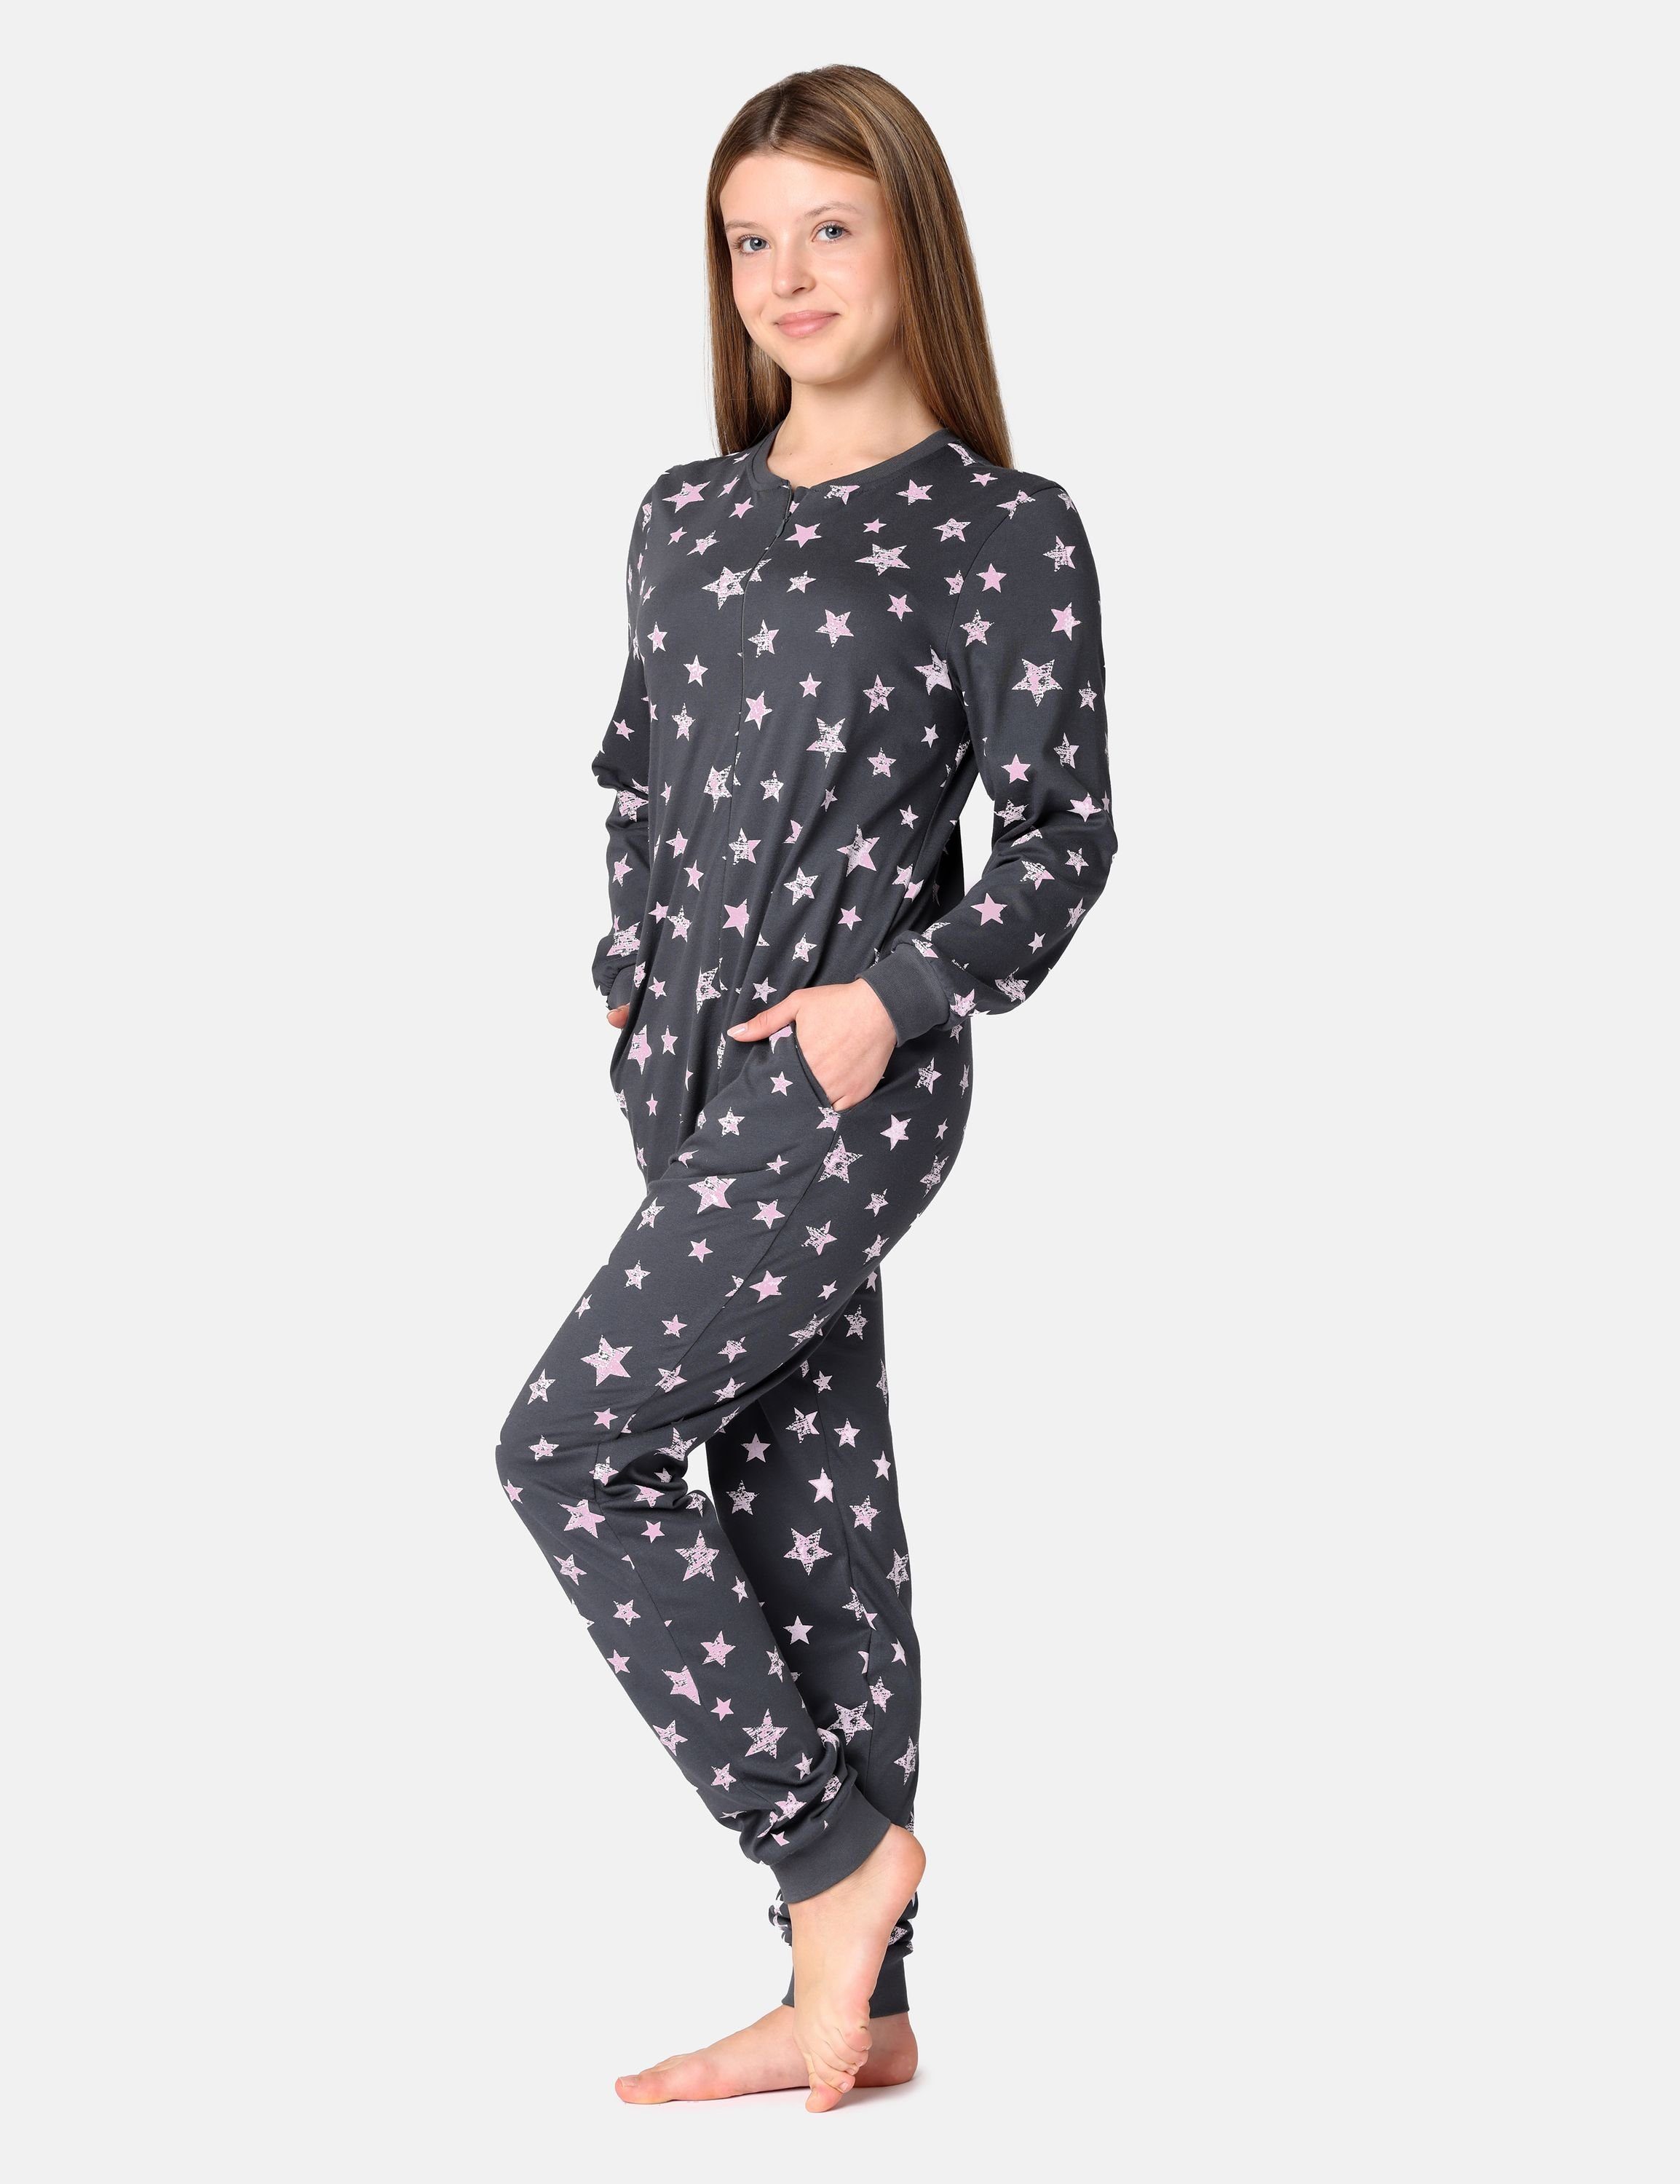 Sterne Style Schlafanzug Mädchen MS10-235 Schlafanzug Merry Grafit/Rosa Schlafoverall Jugend